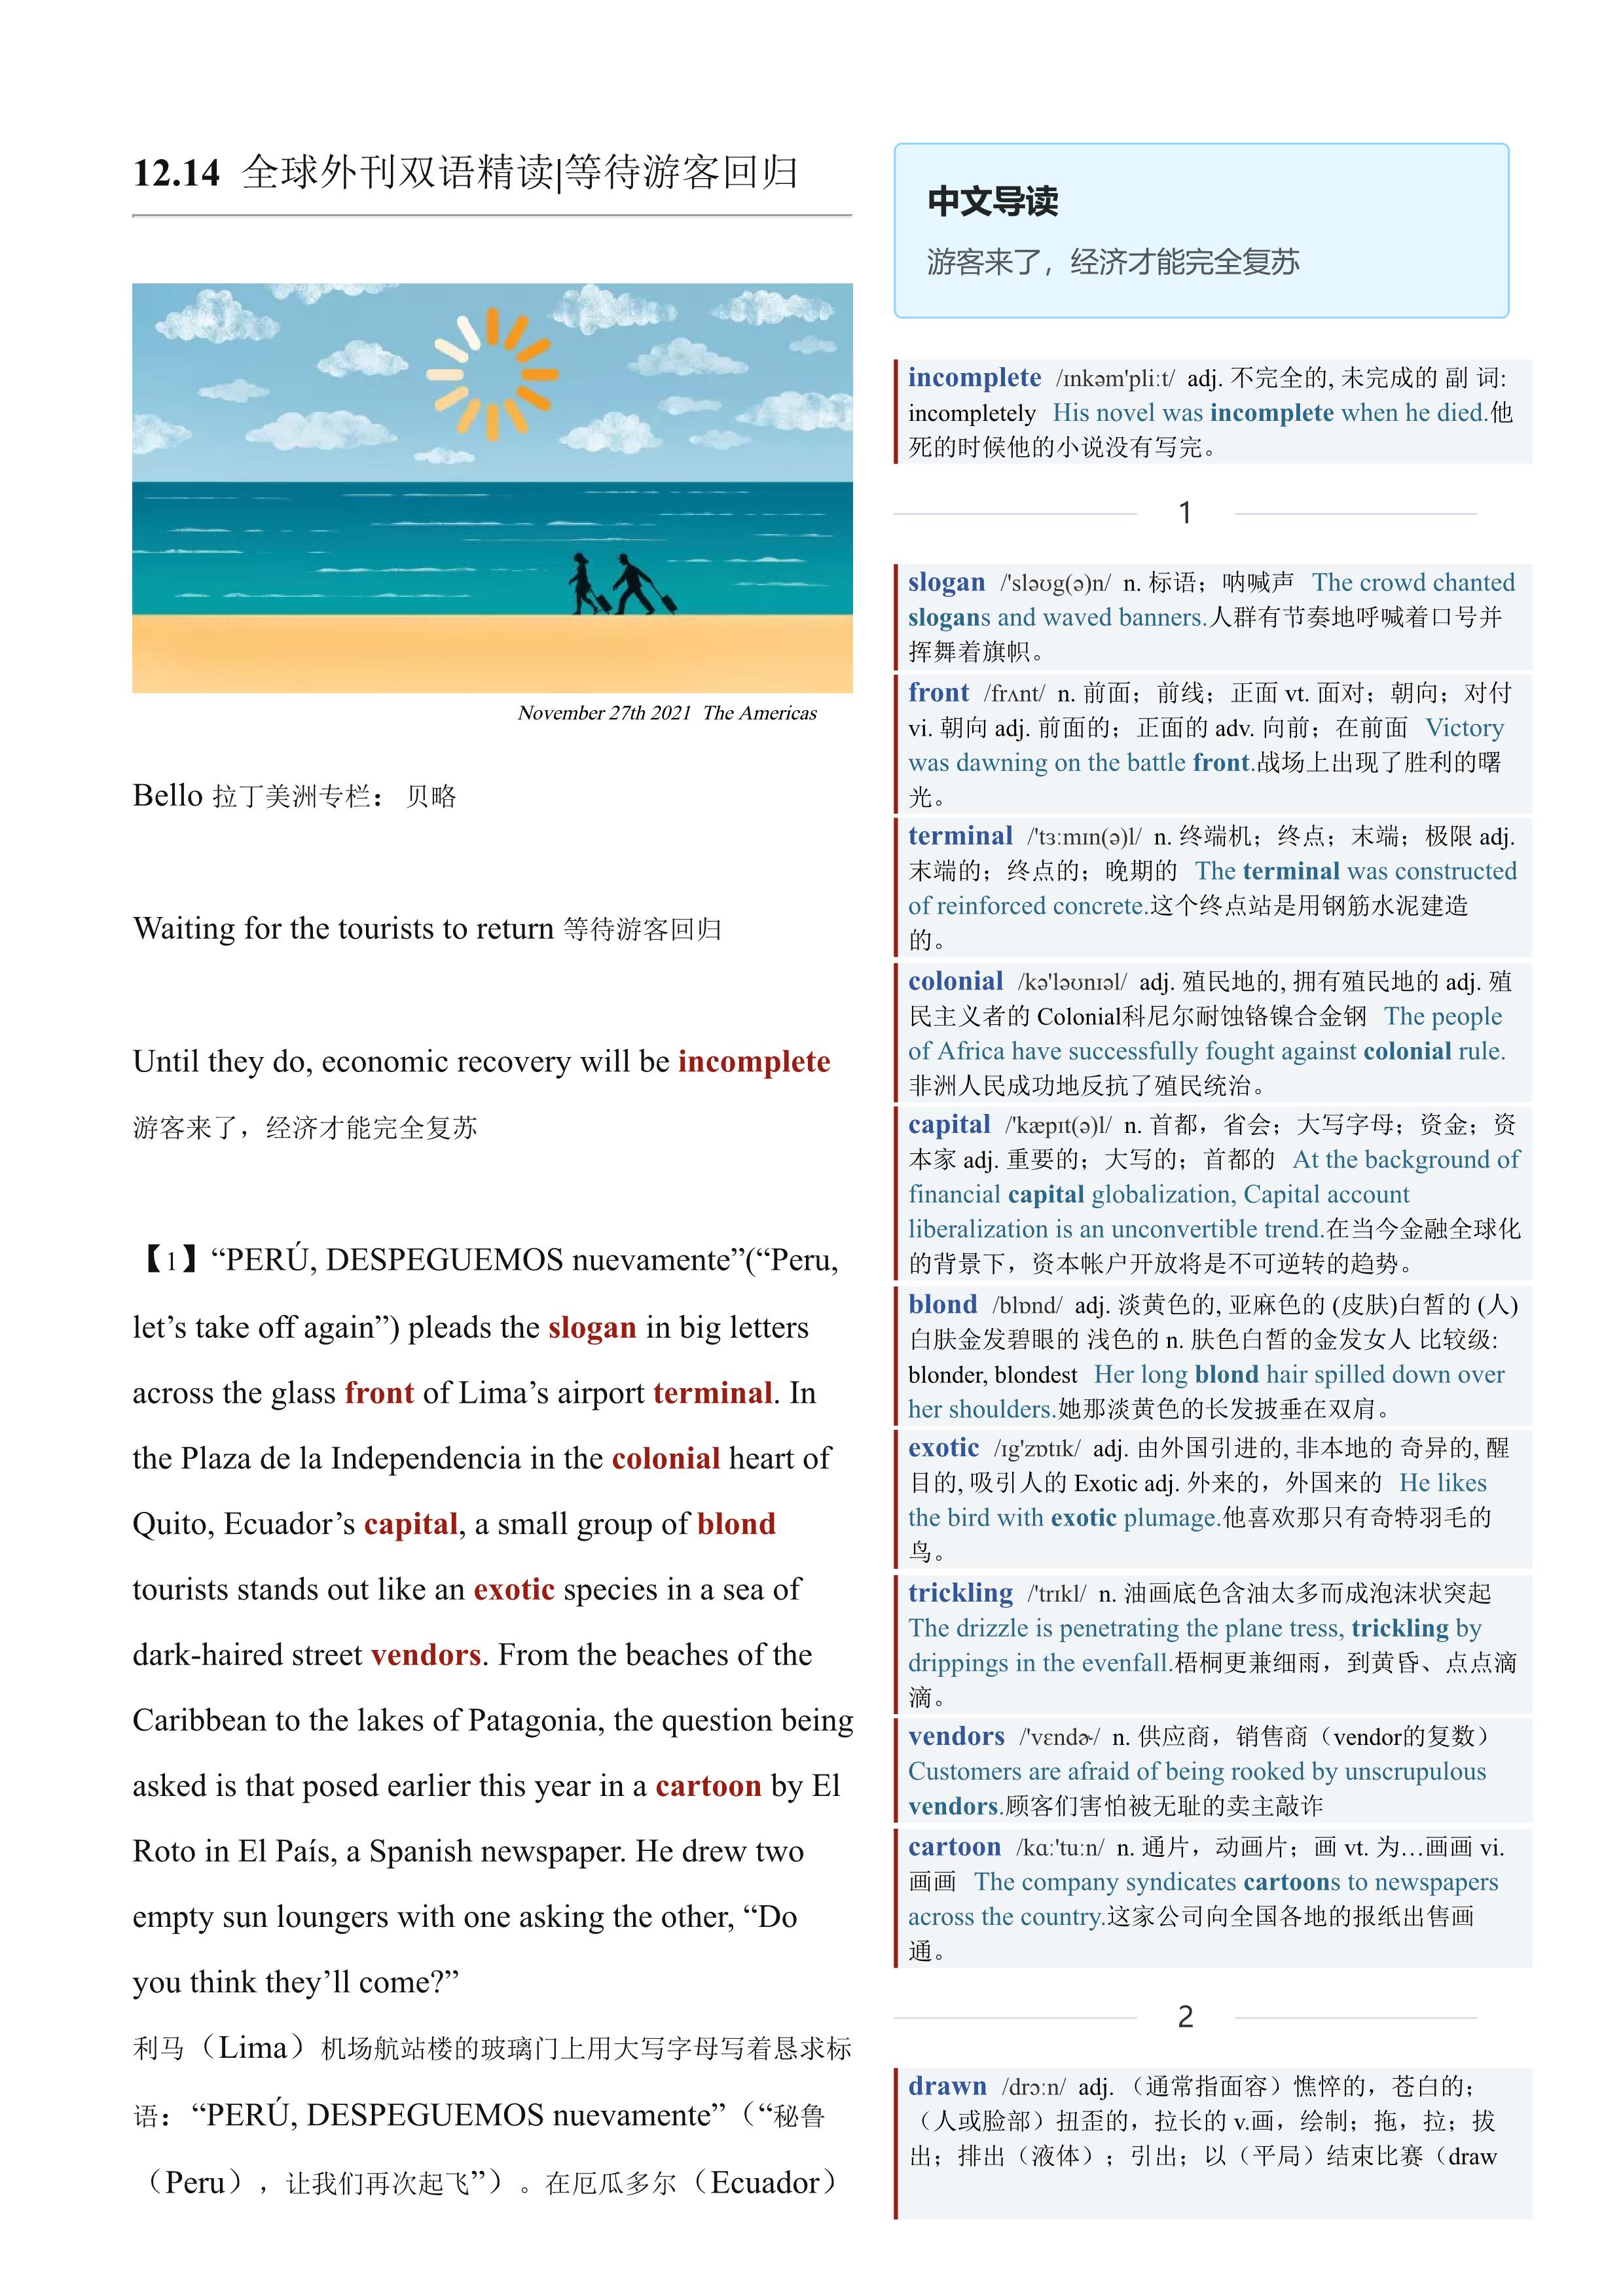 2021.12.14 经济学人双语精读丨等待游客回归 (.PDF/DOC/MP3)